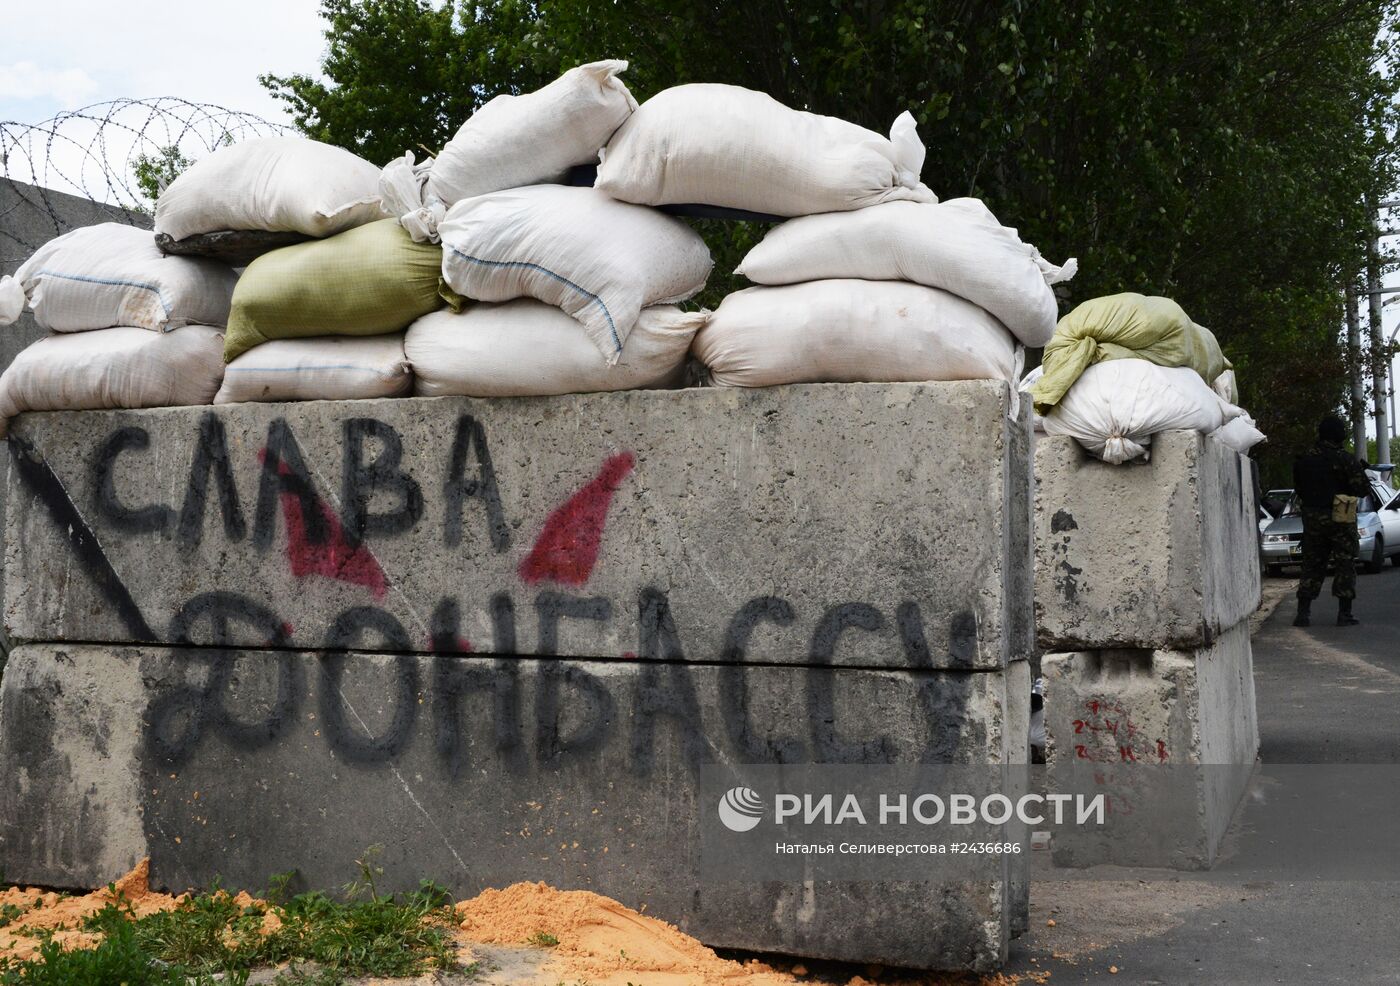 Блокпост ДНР возле села Пески в Донецкой области